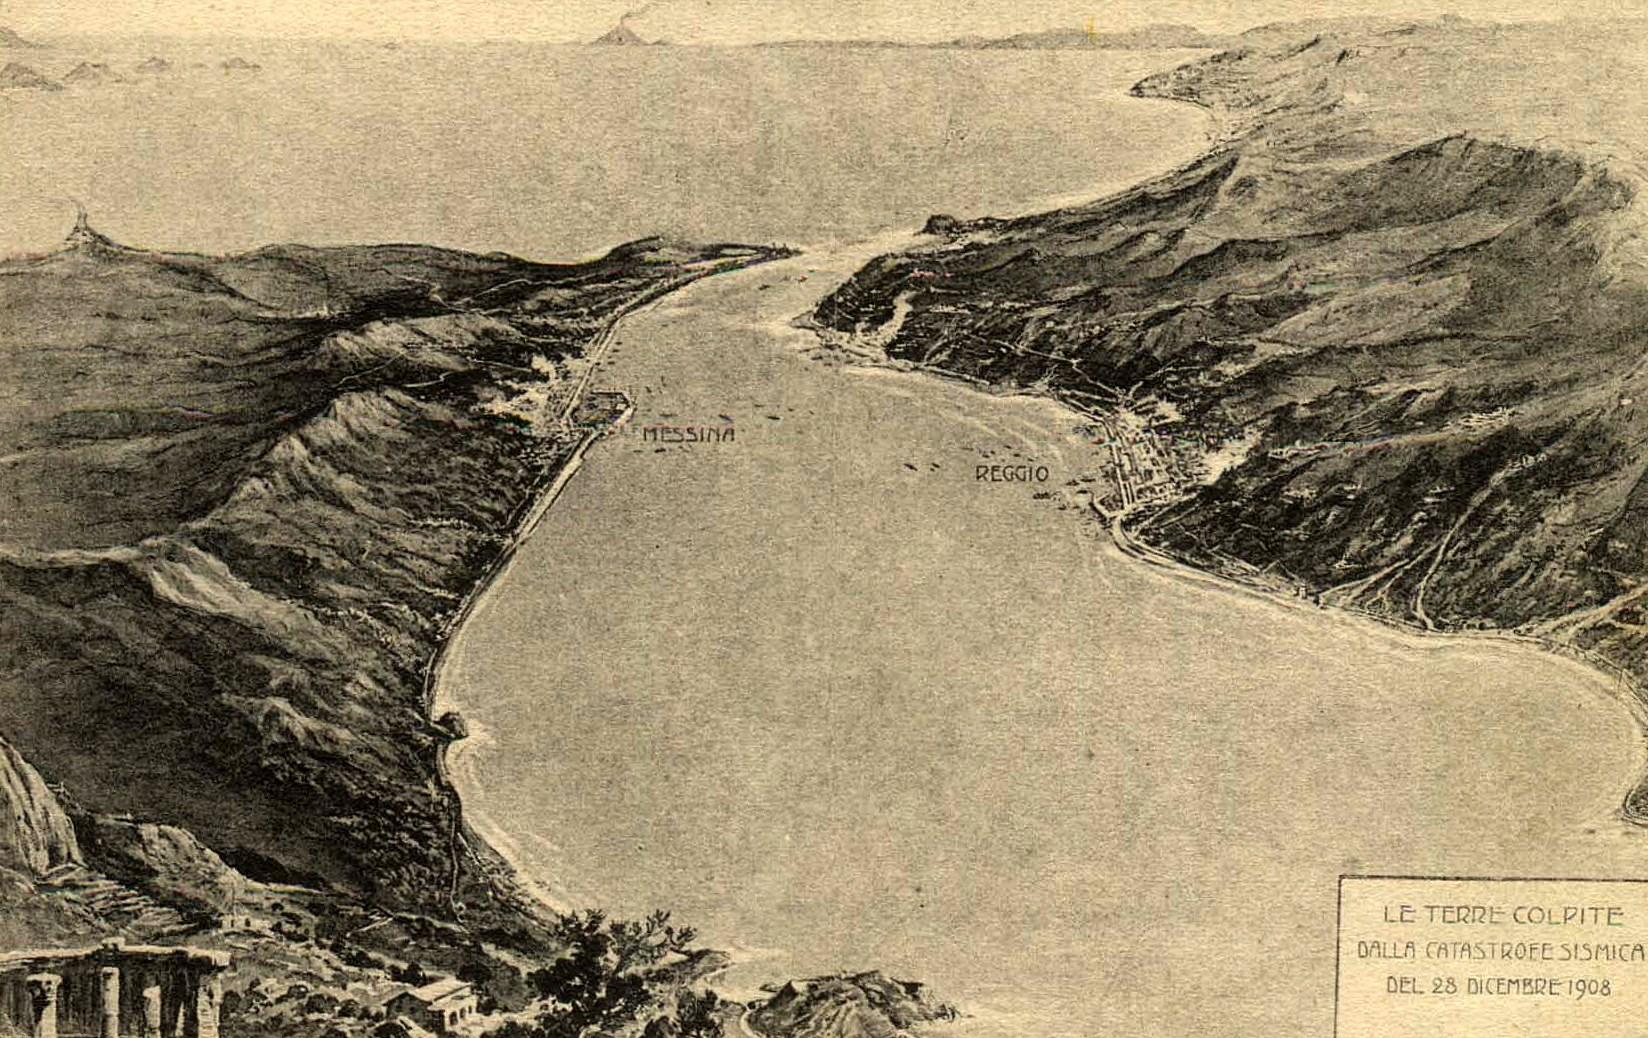 Le terre colpite dalla catastrofe sismica del 28 dicembre 1908